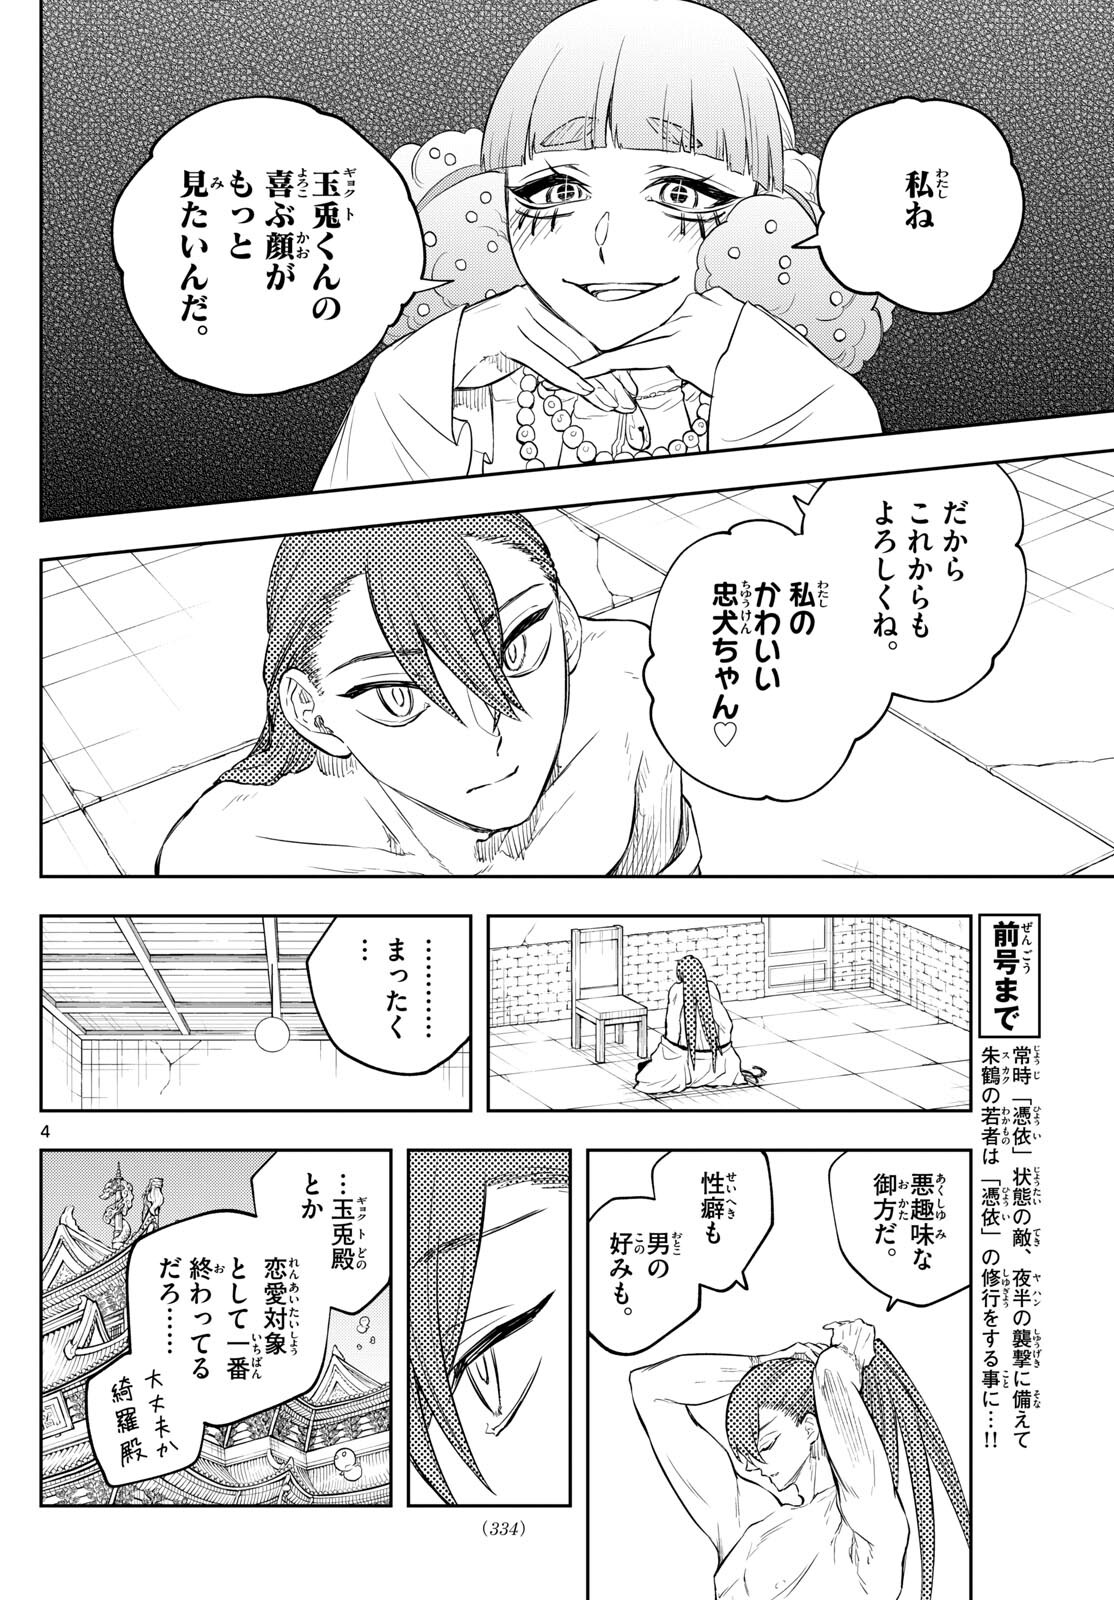 Akatsuki Jihen - Chapter 41 - Page 4